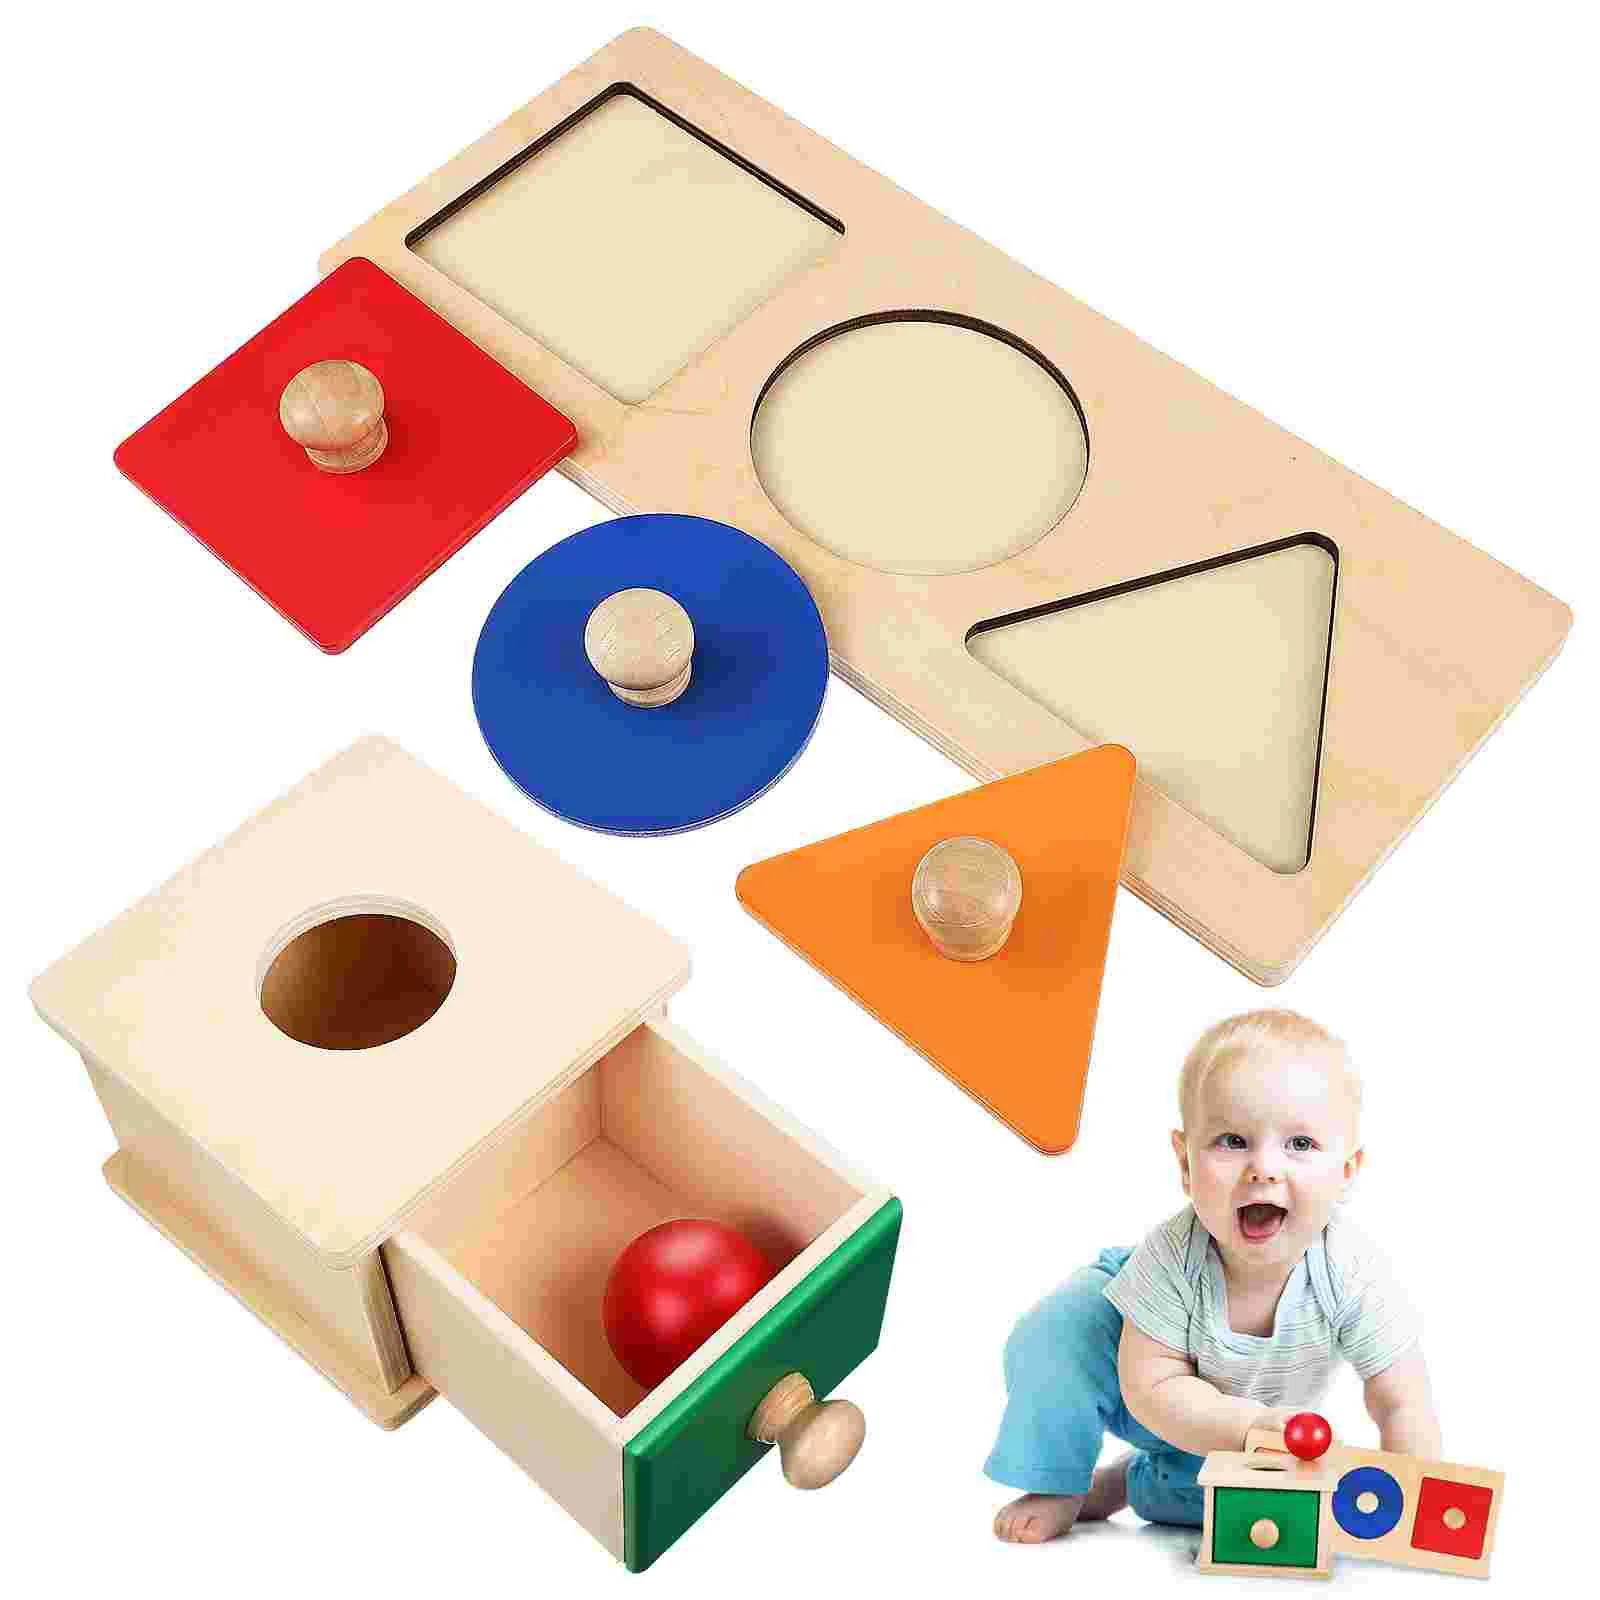 

Учебное пособие Монтессори, игрушка для детей, обучающий материал, Детские когнитивные сенсорные игрушки, набор лотосного дерева